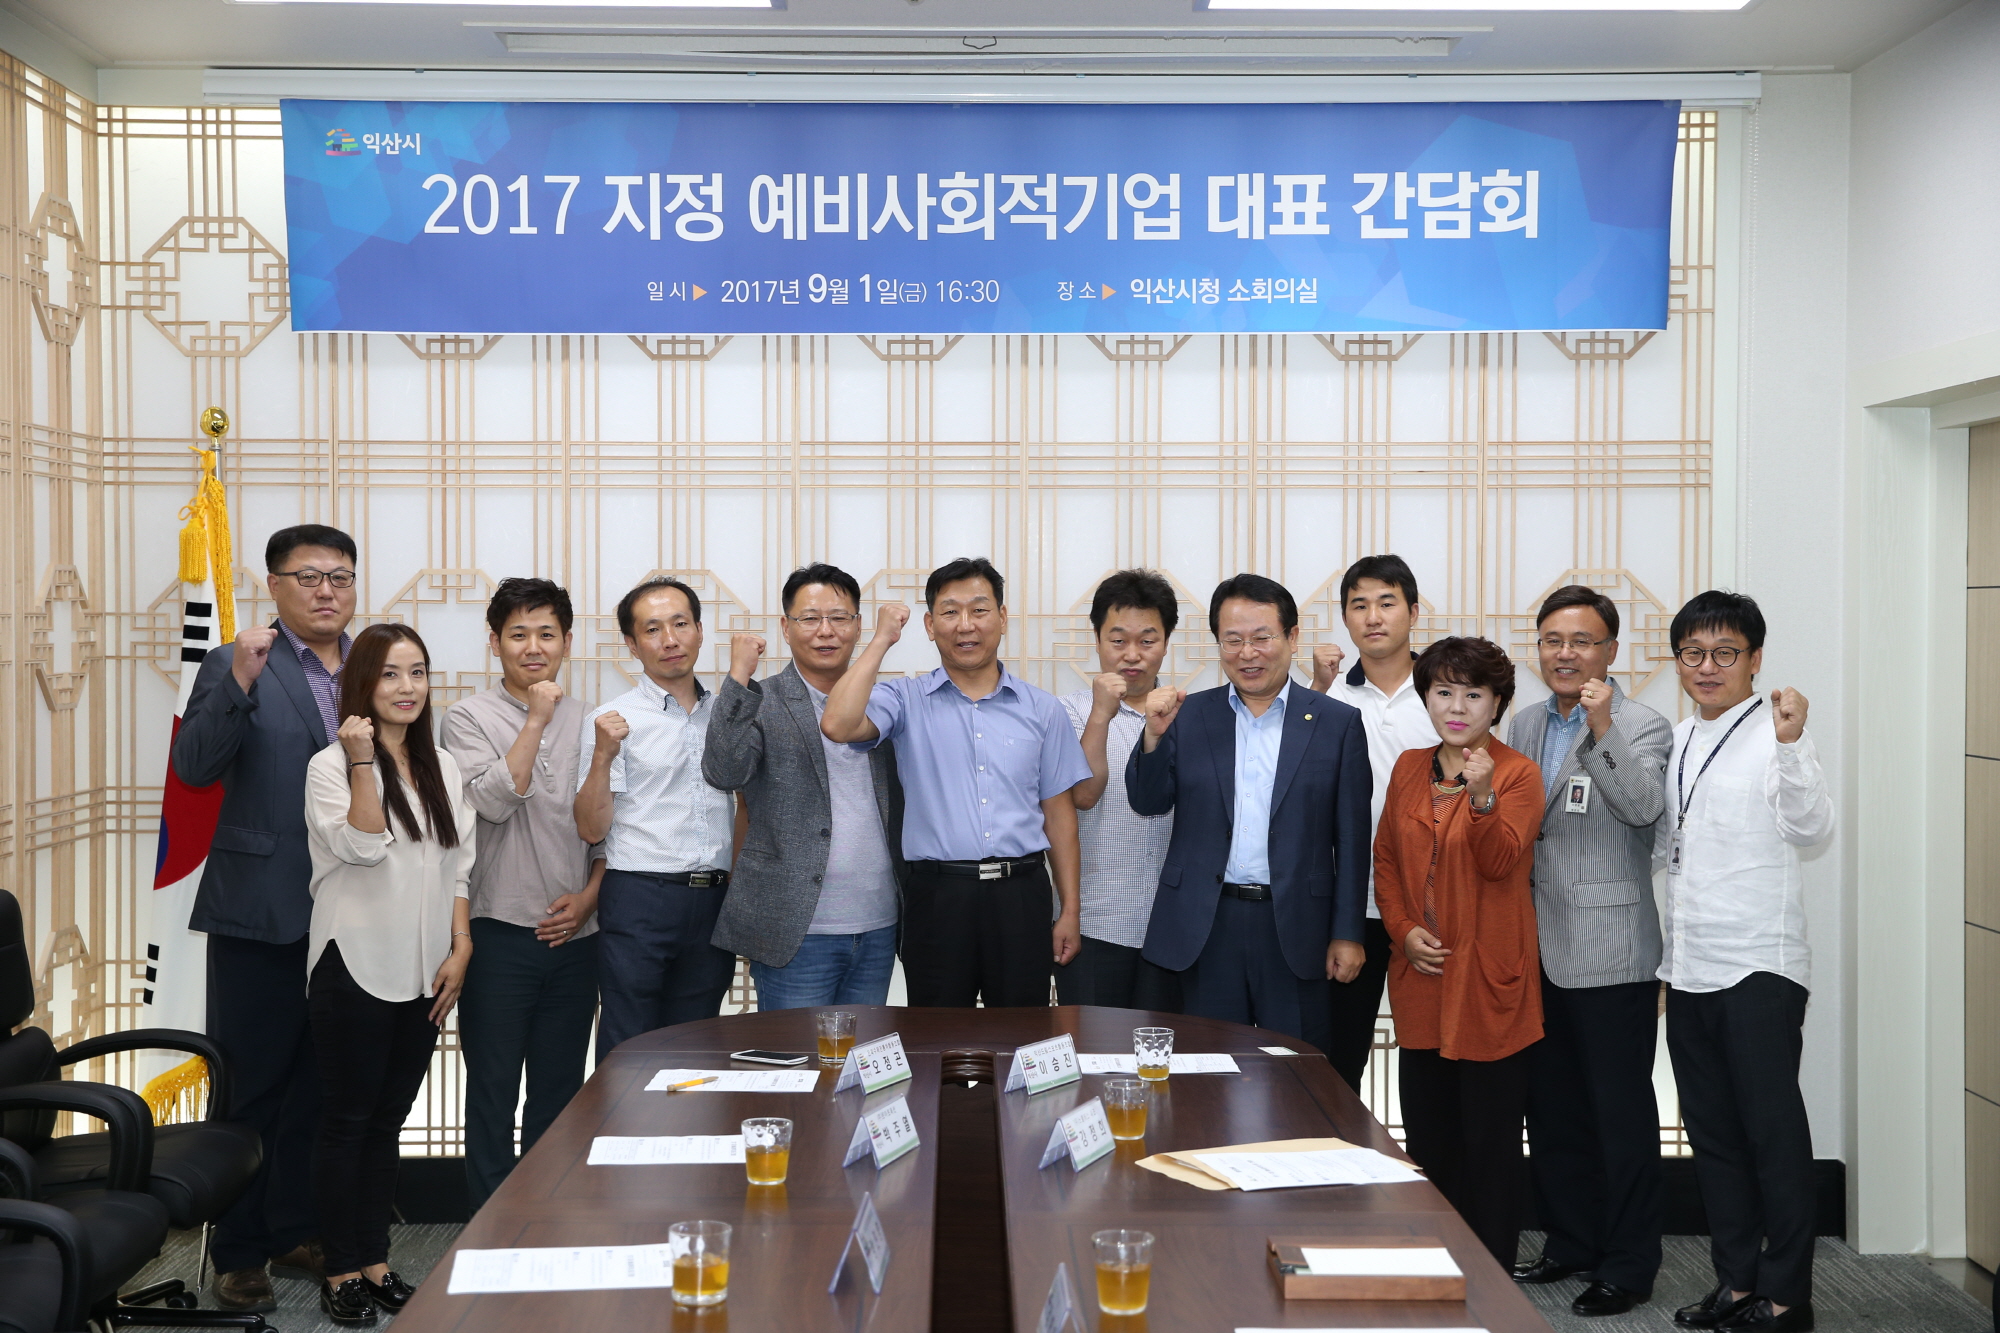 9월6일 2017년 신규 지정 예비사회적기업 대표와의 간담회 개최